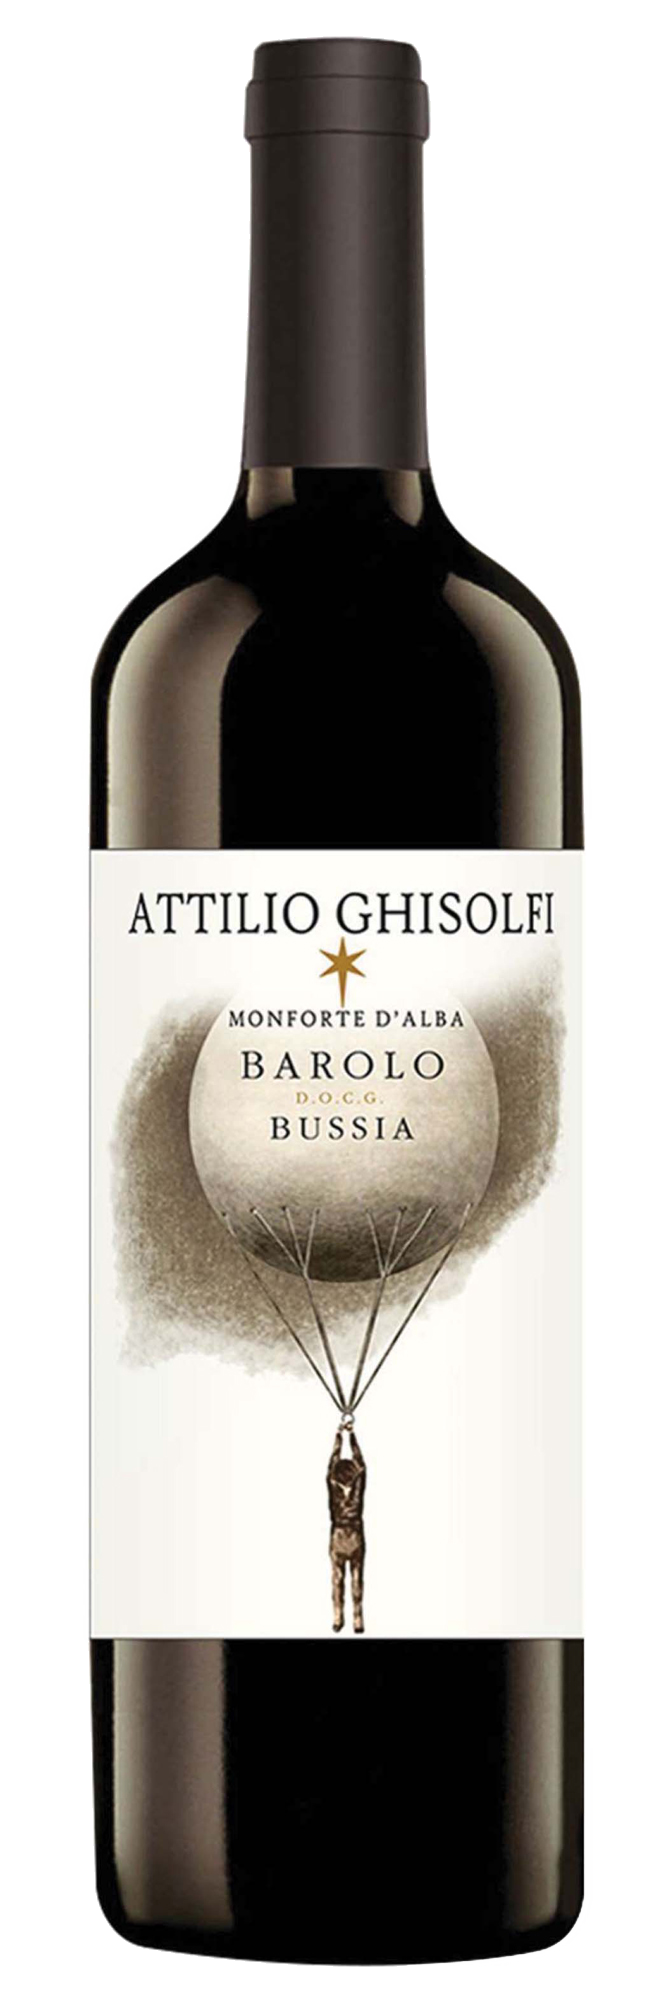 2018 Attilio Ghisolfi Barolo Bussia